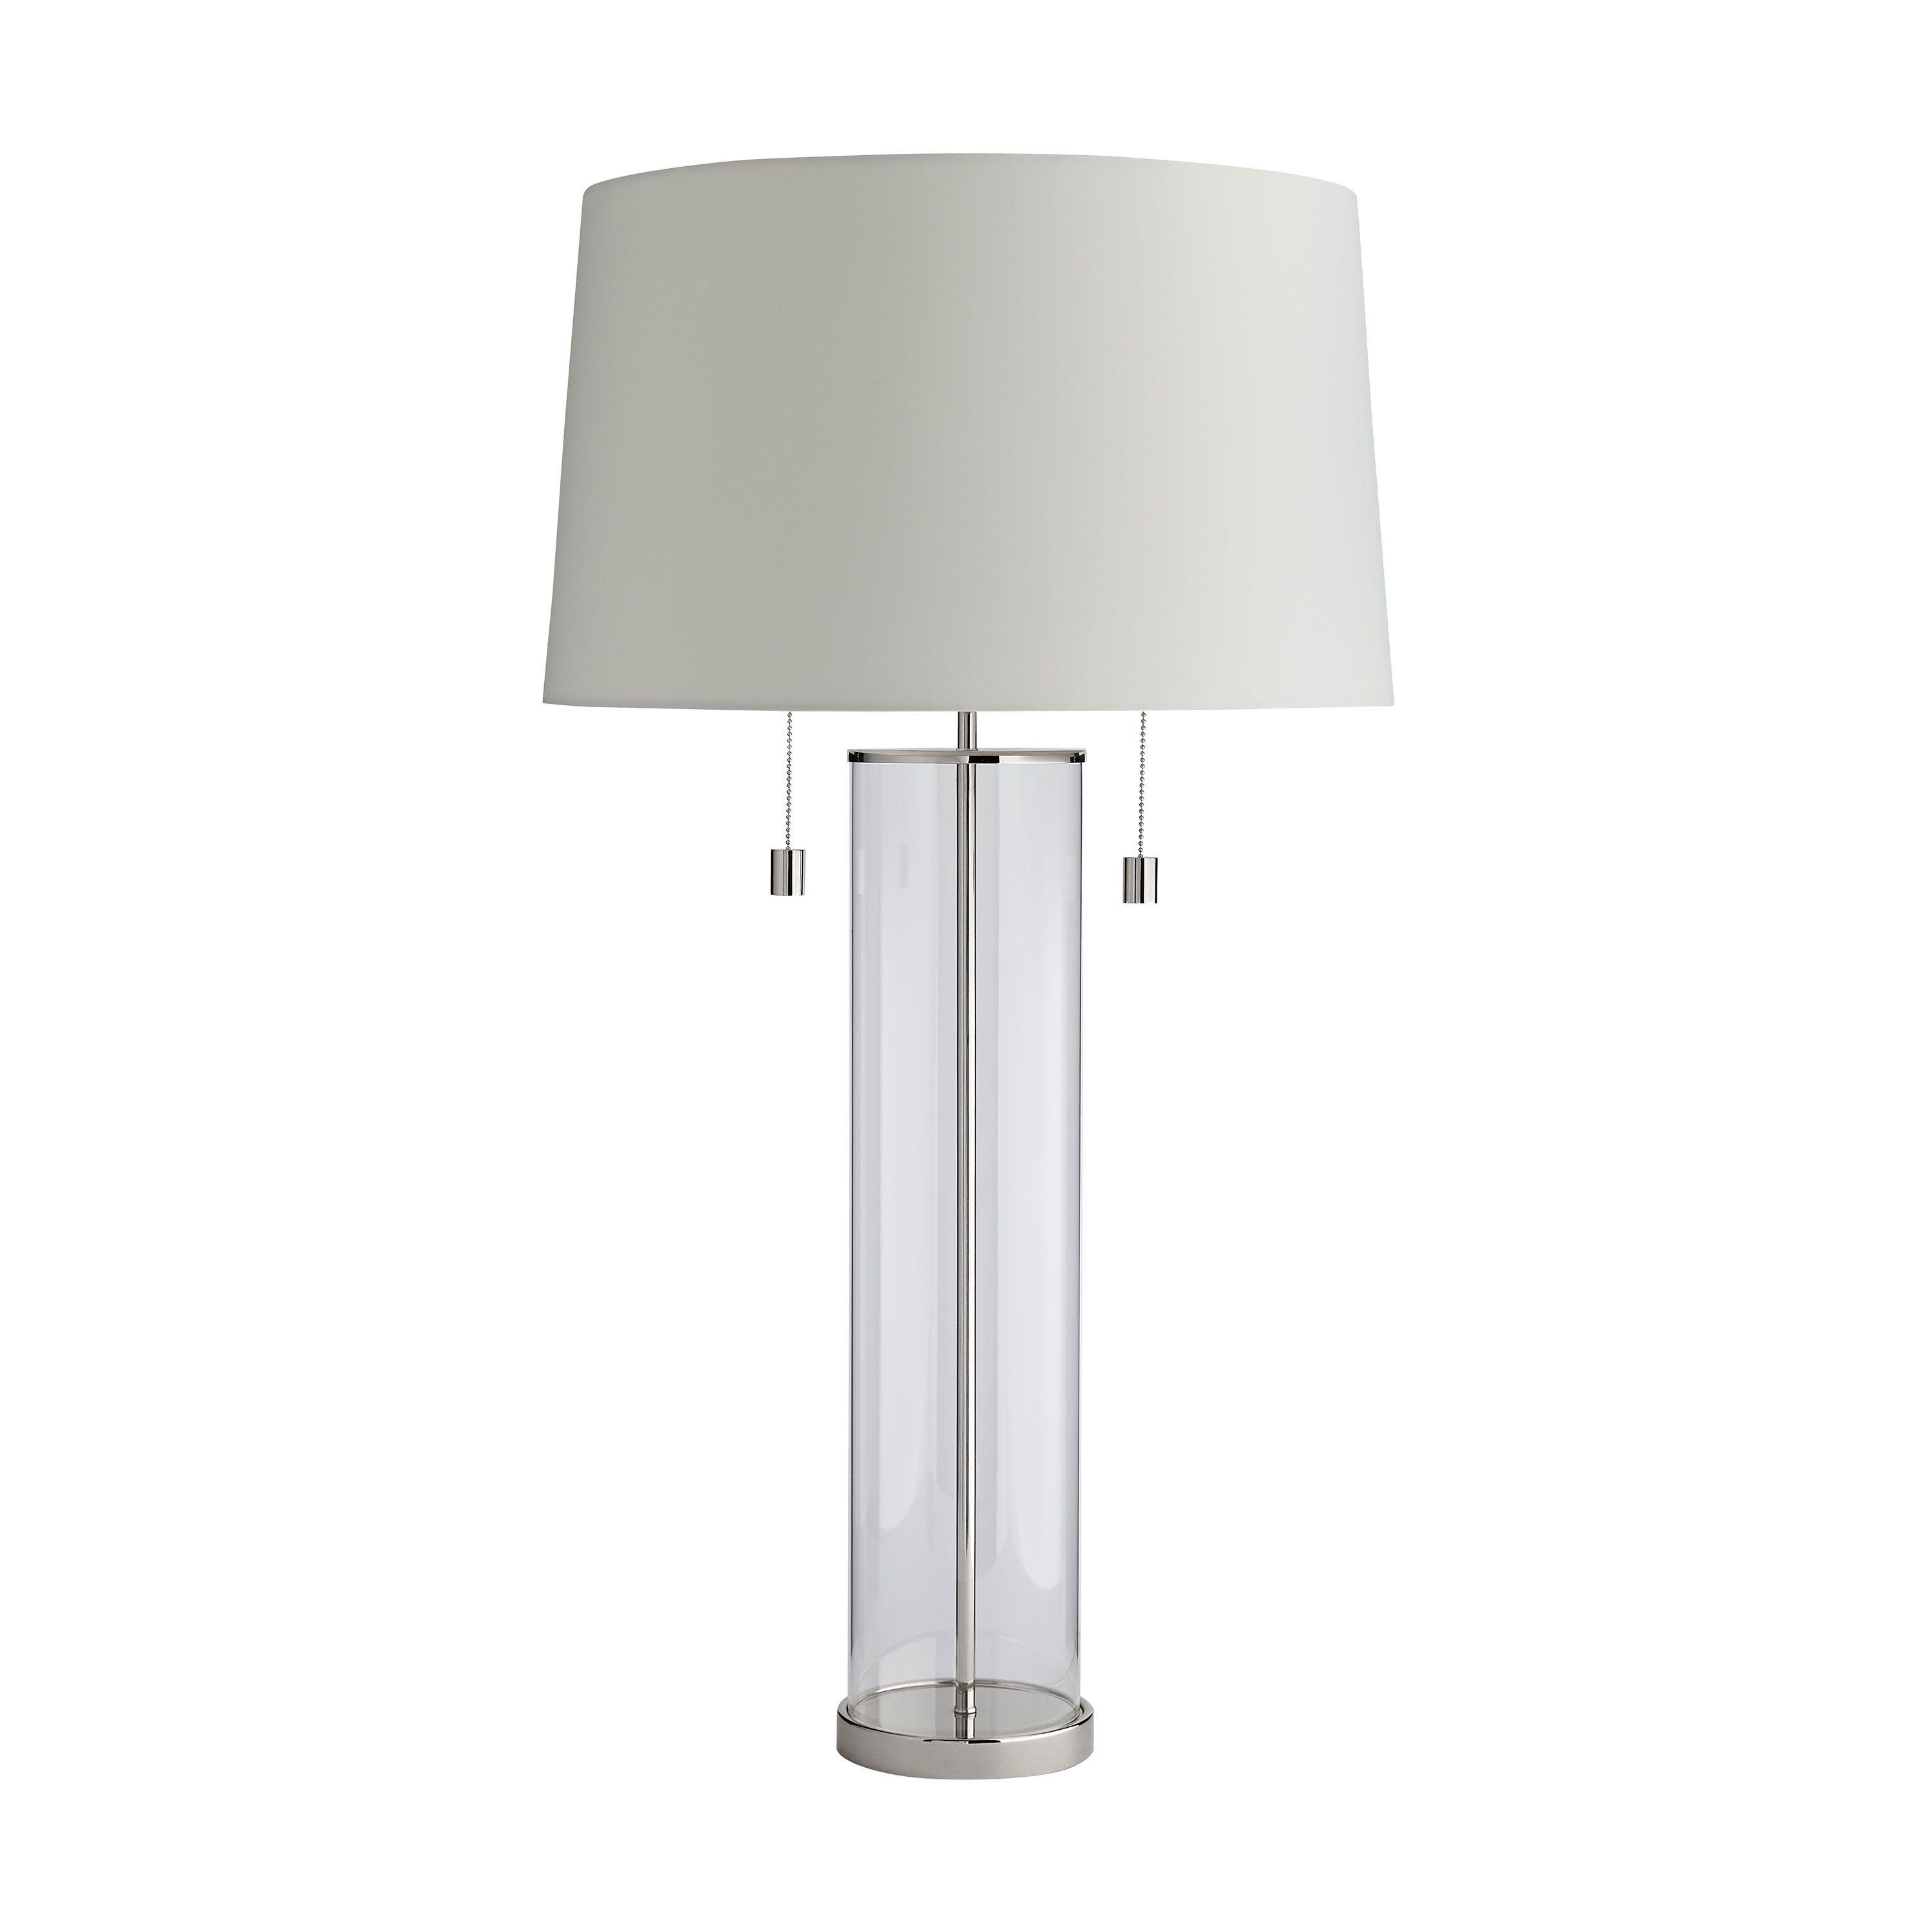 Купить Настольная лампа Savannah Lamp в интернет-магазине roooms.ru